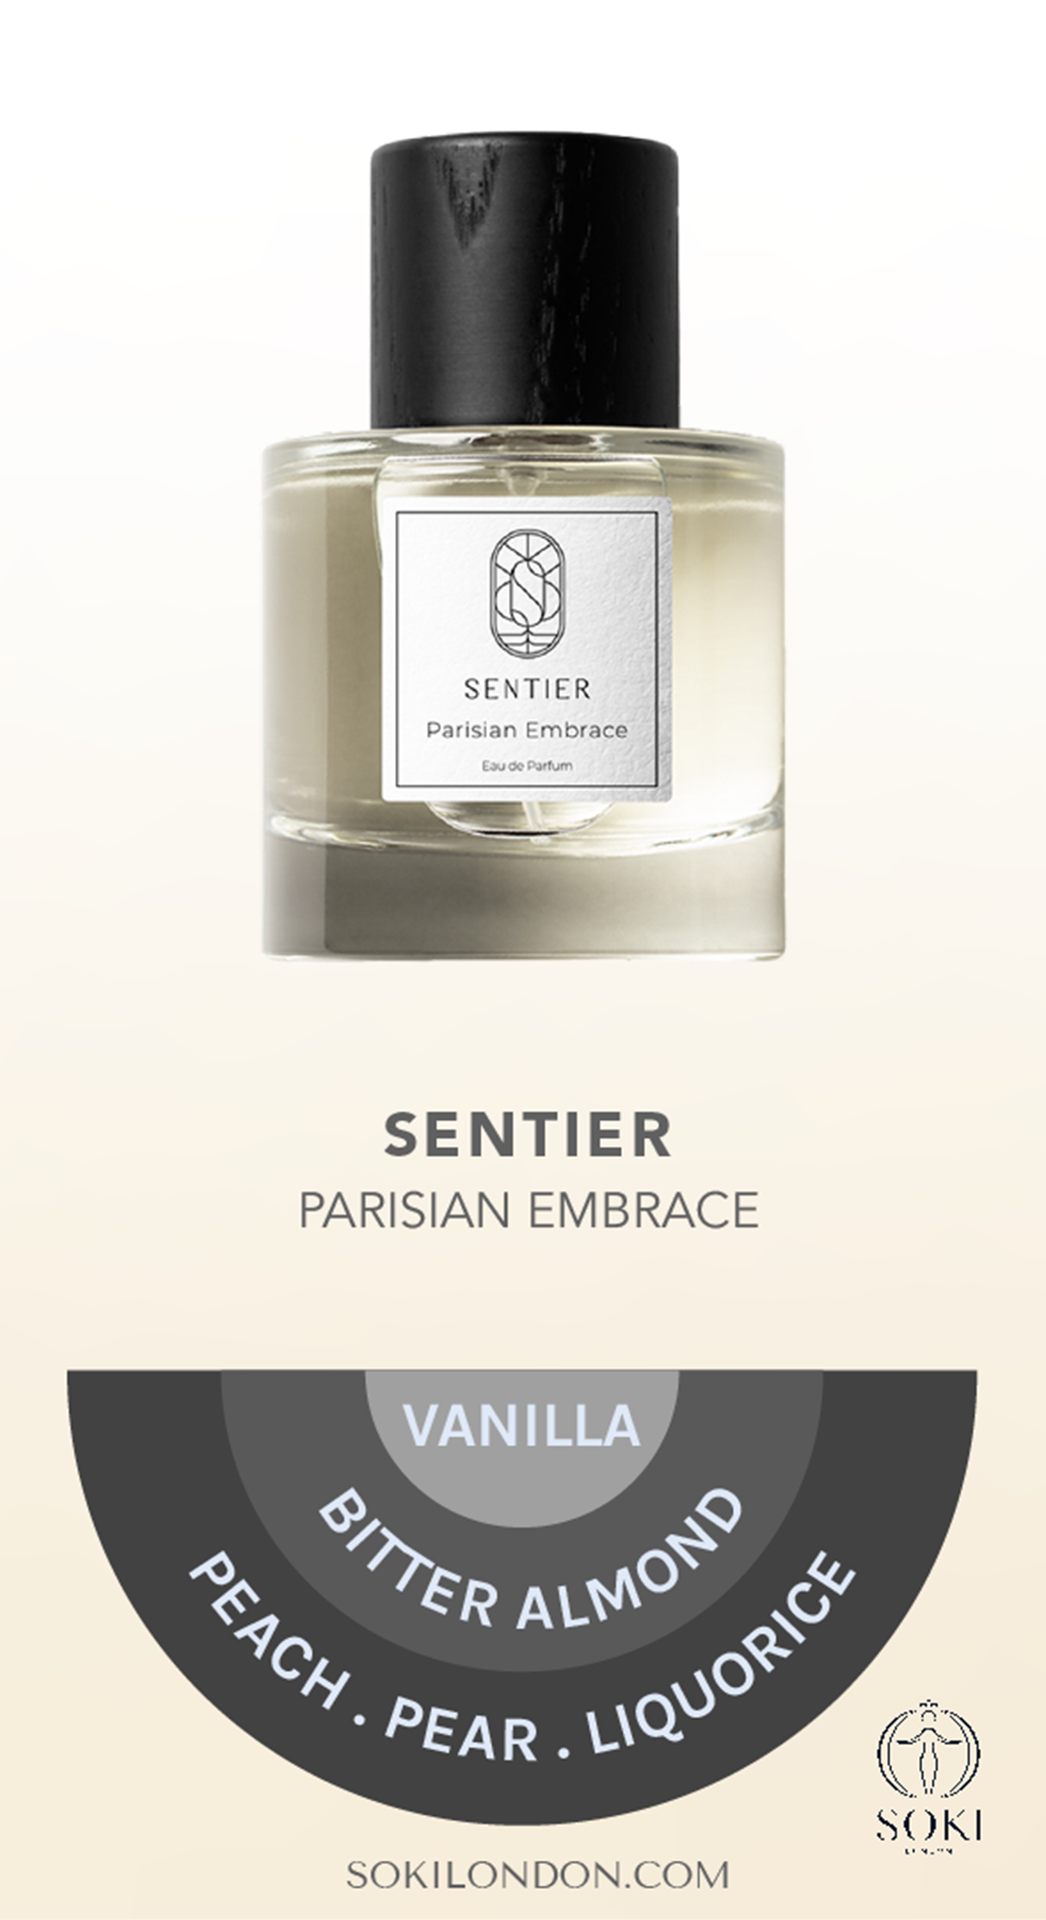 Parisian Embrace
Sentier Fragrances